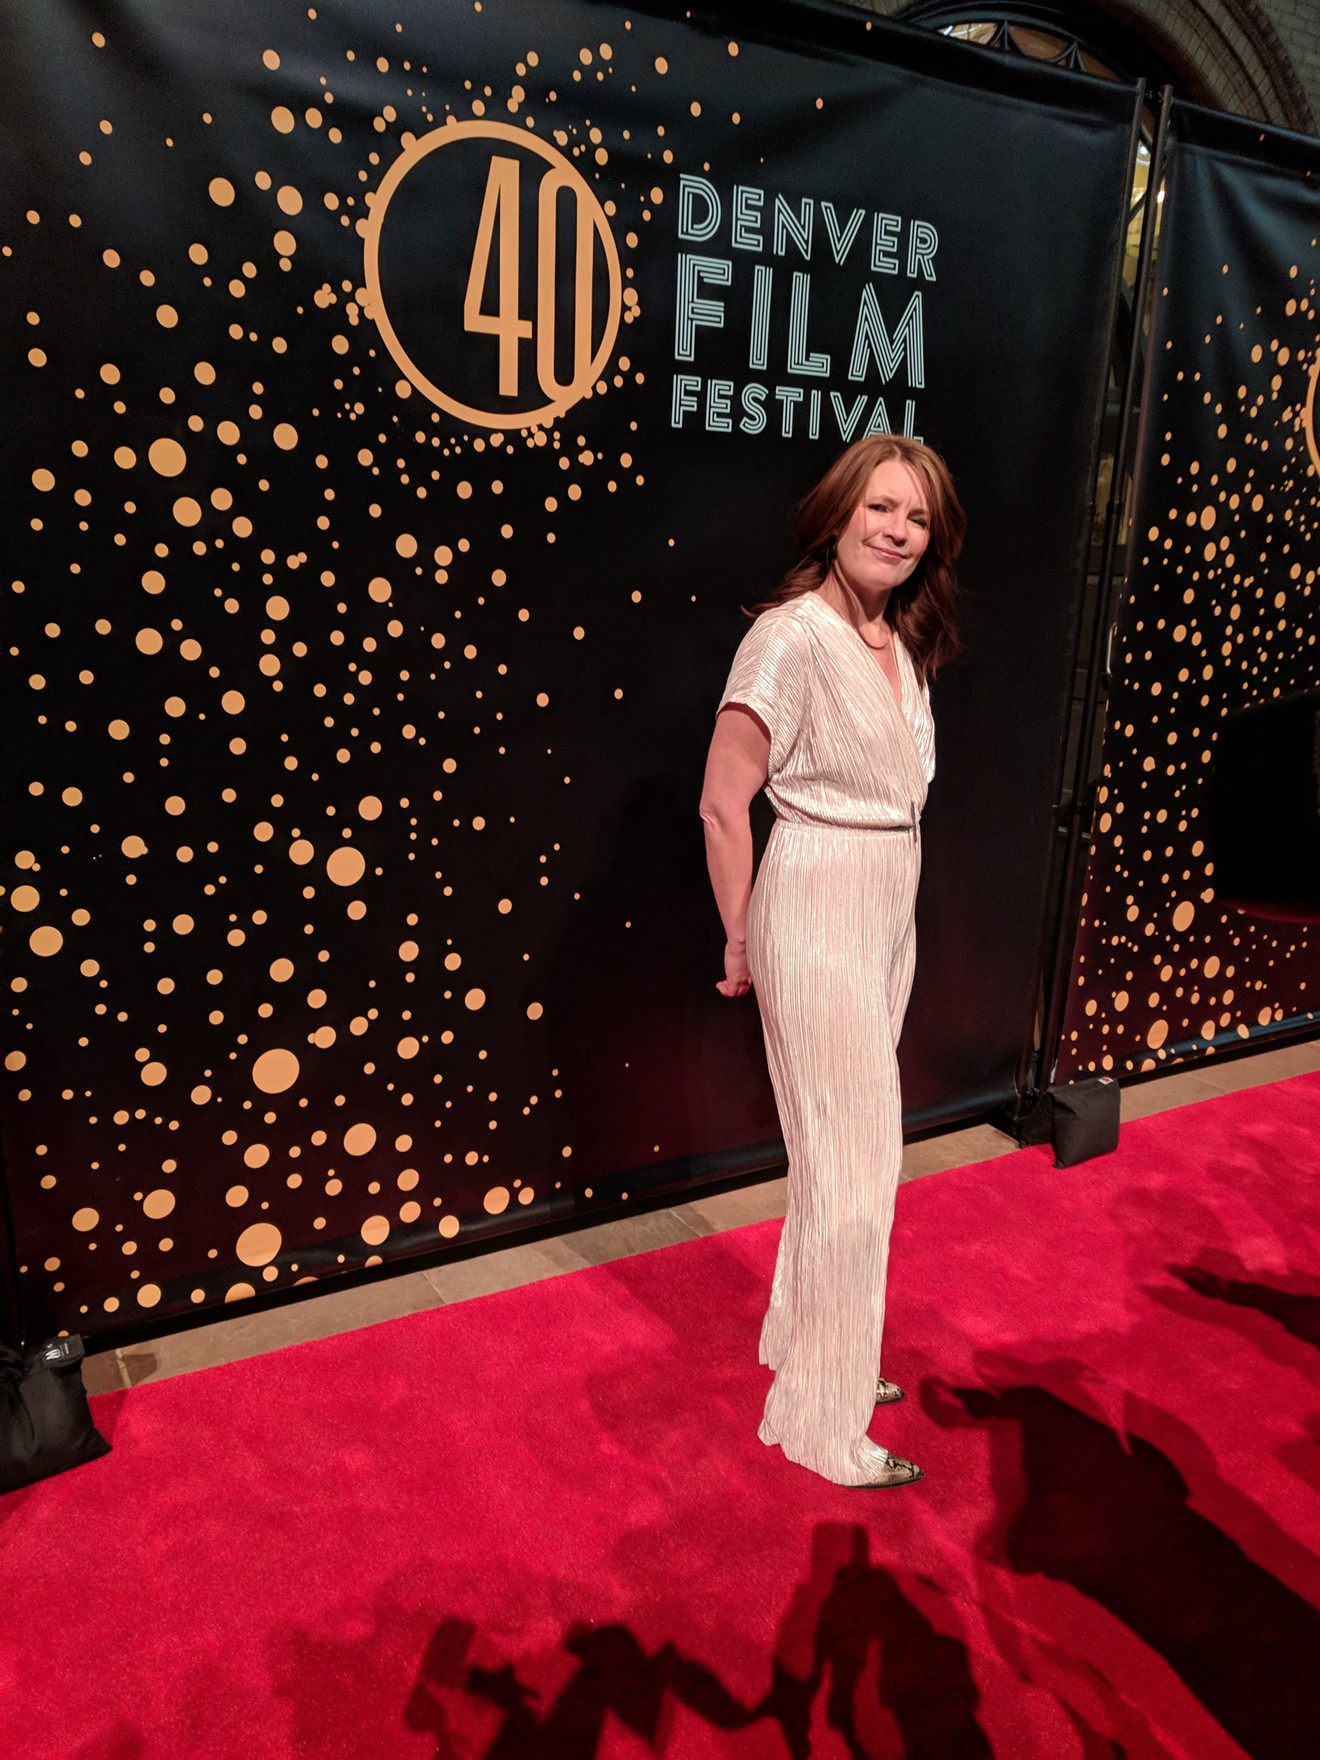 Denver Film Festival Director Britta Erickson on the red carpet for Molly's Game.